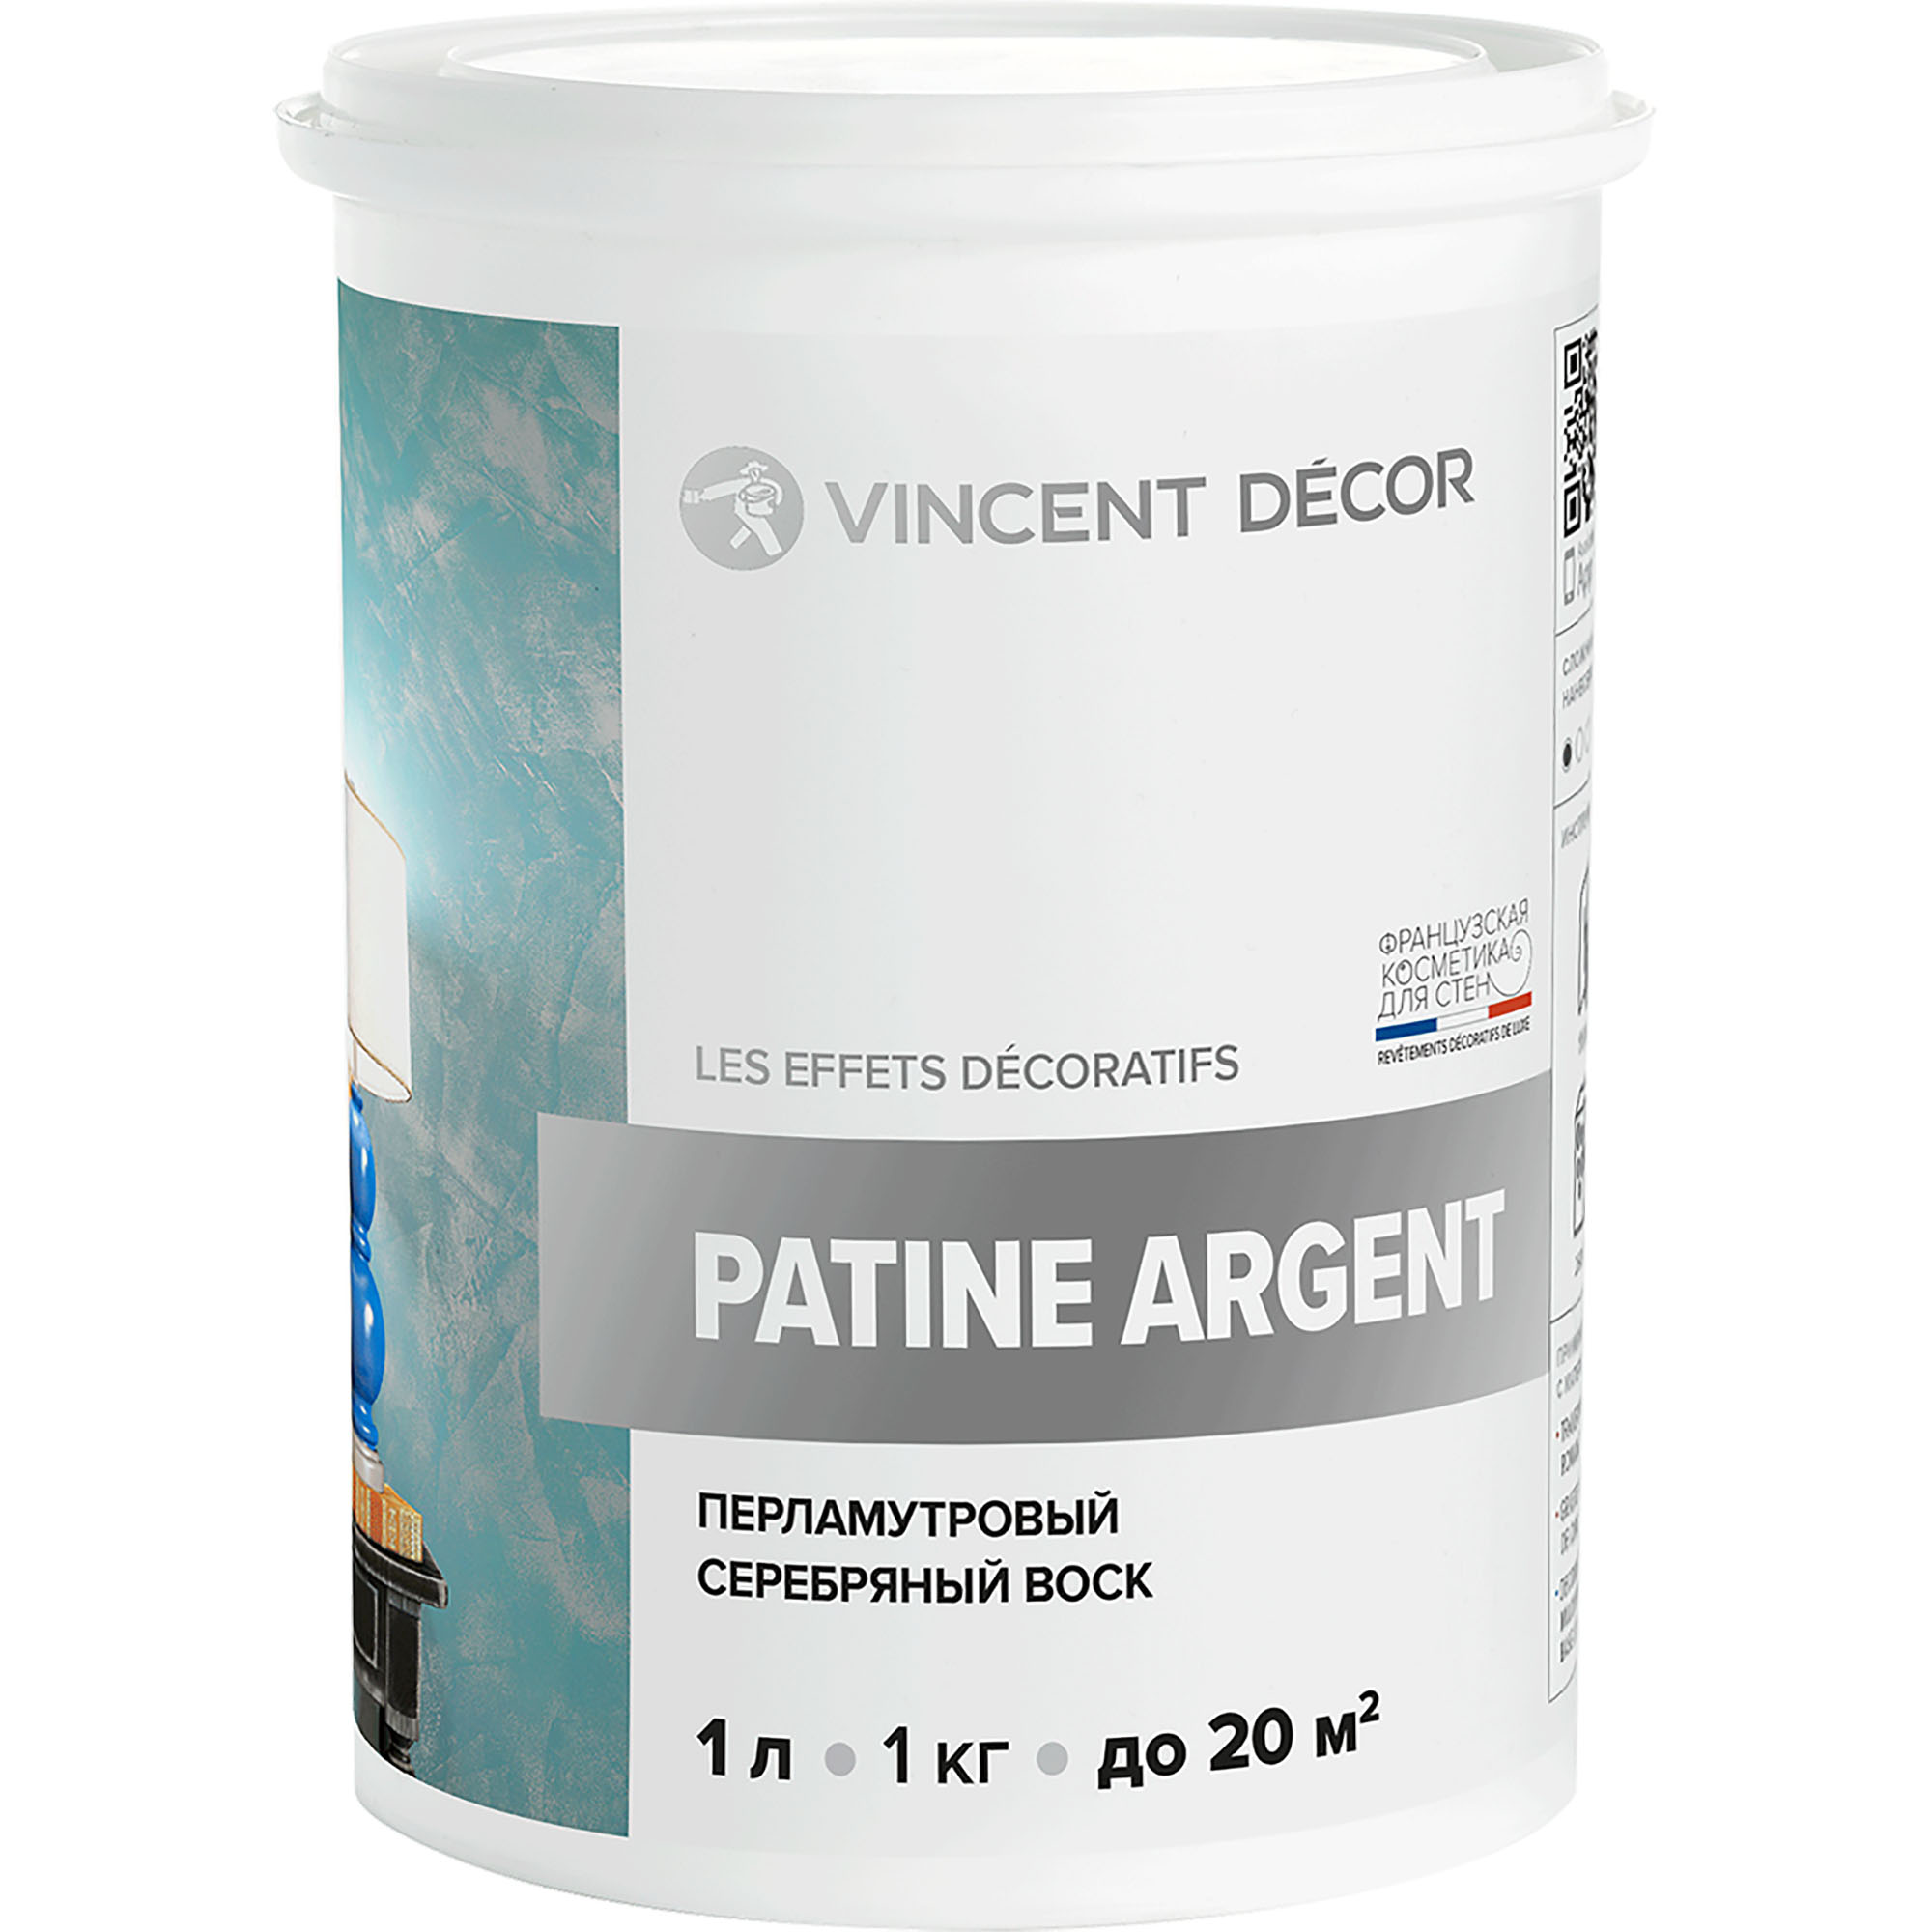 Перламутровый серебряный воск Vincent Decor Patine Argent для декоративных покрытий 1 кг макс сб 3228 полки 1000 серый перламутровый 2шт опция